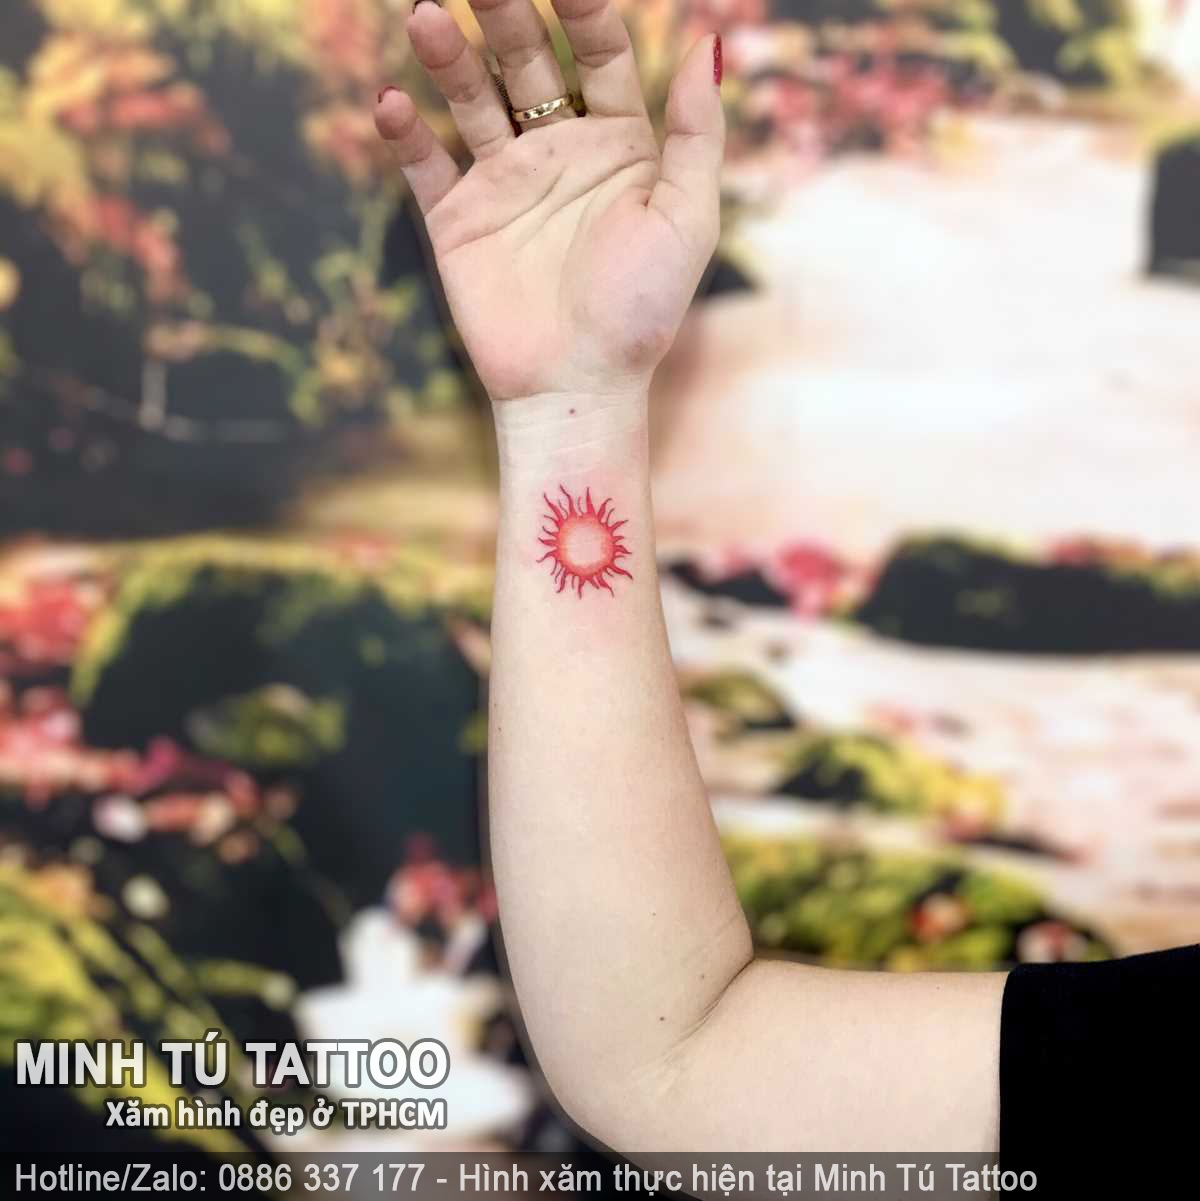 Tác phẩm hình xăm do Minh Tú Tattoo thực hiện 58